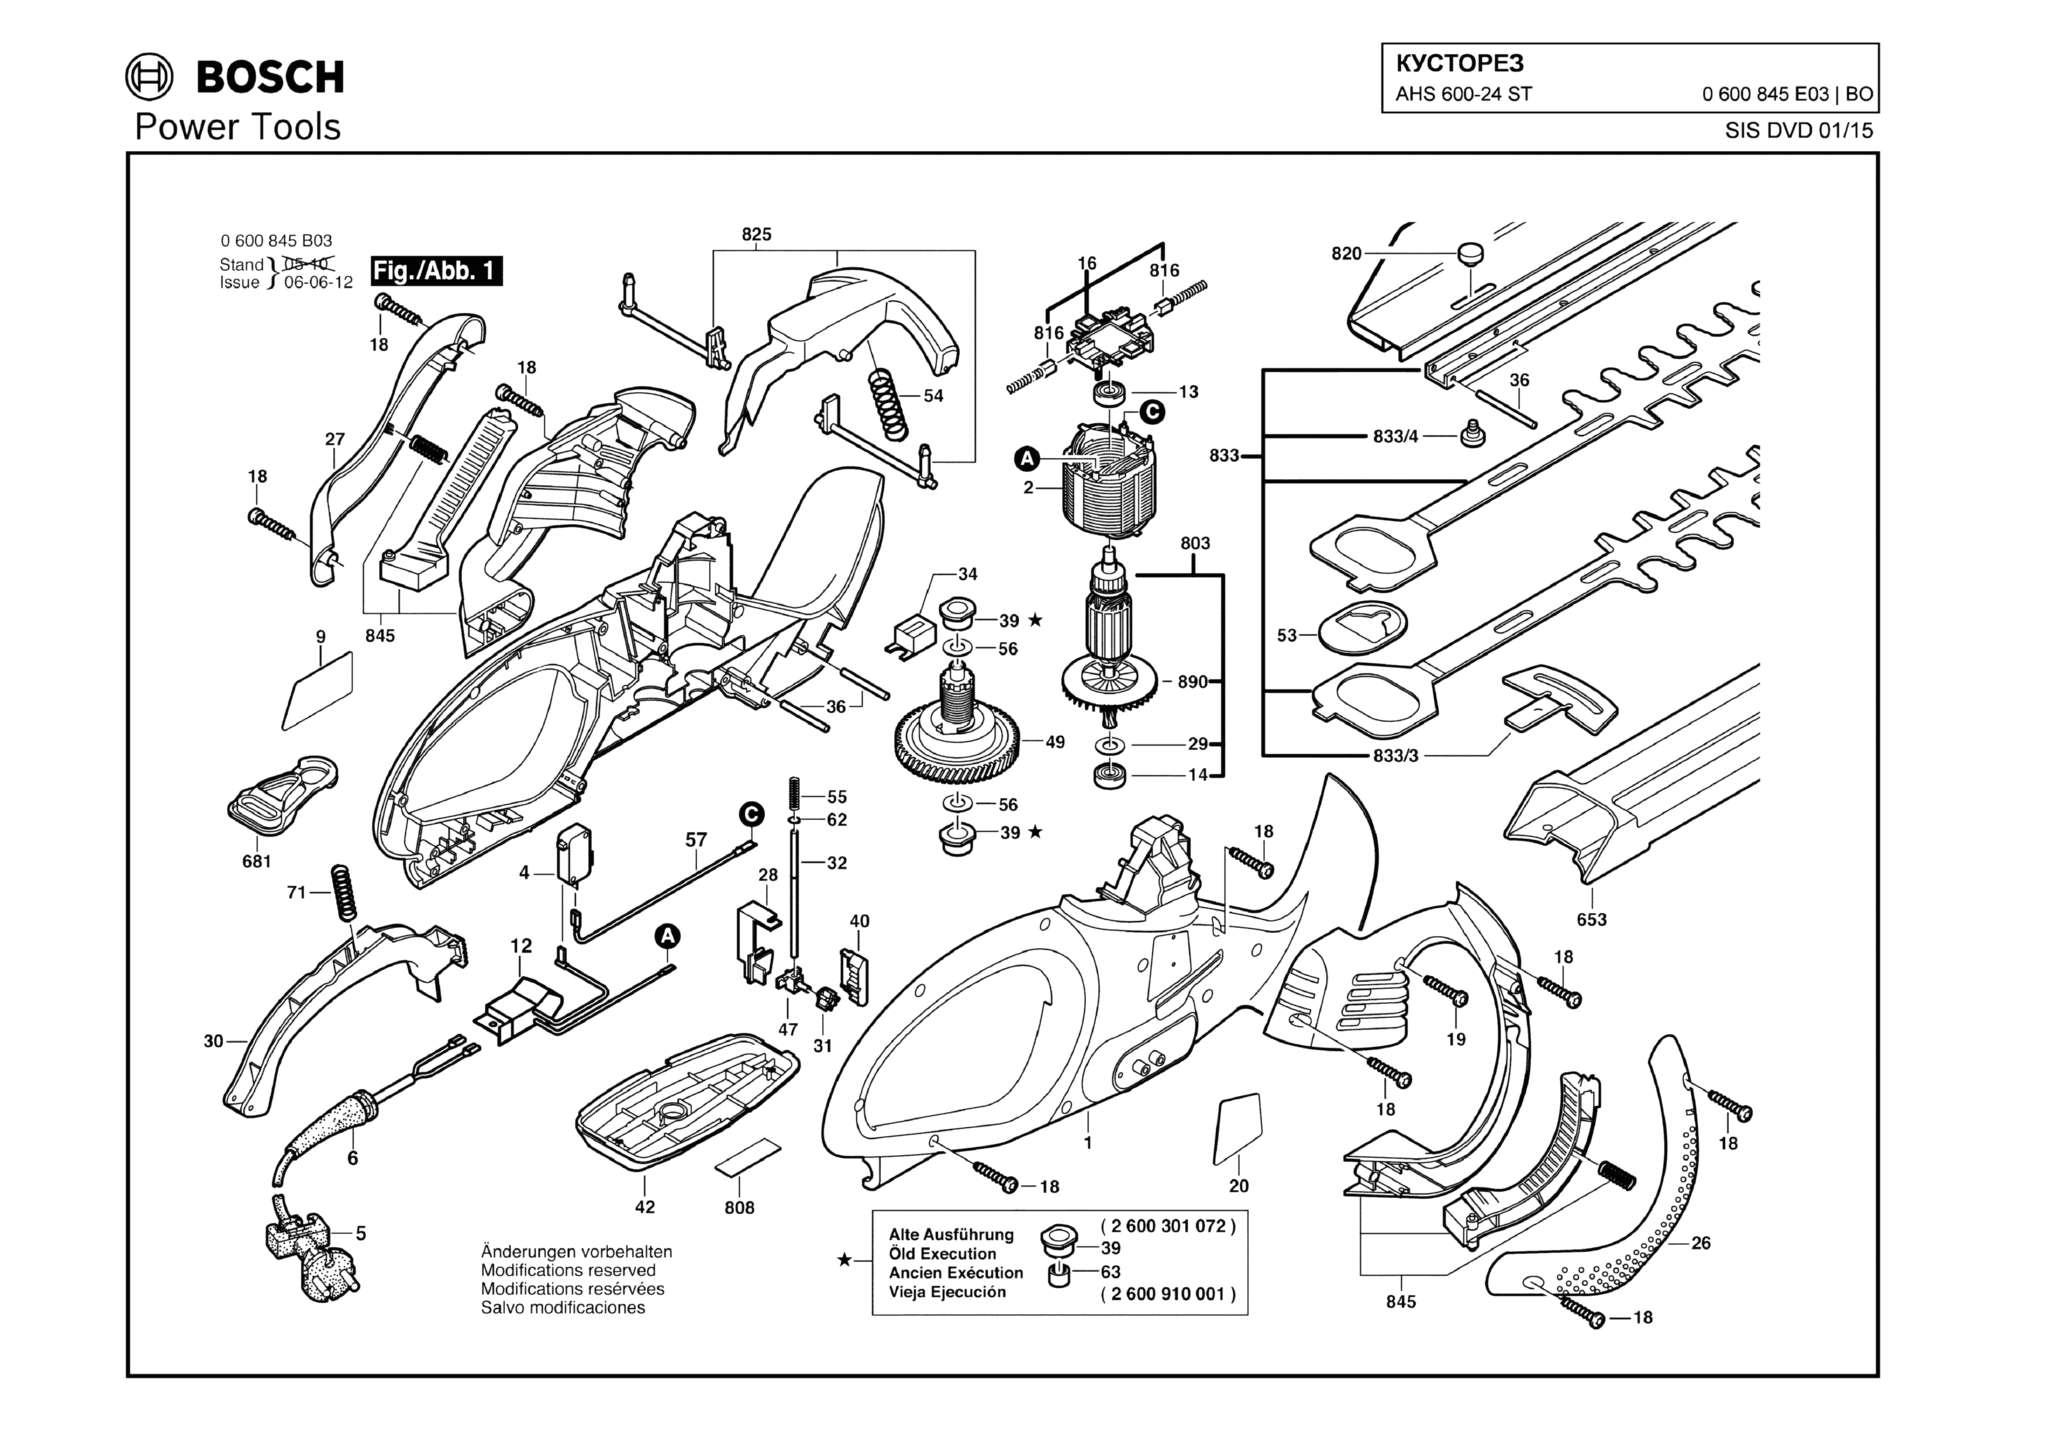 Запчасти, схема и деталировка Bosch AHS 600-24 ST (ТИП 0600845E03)